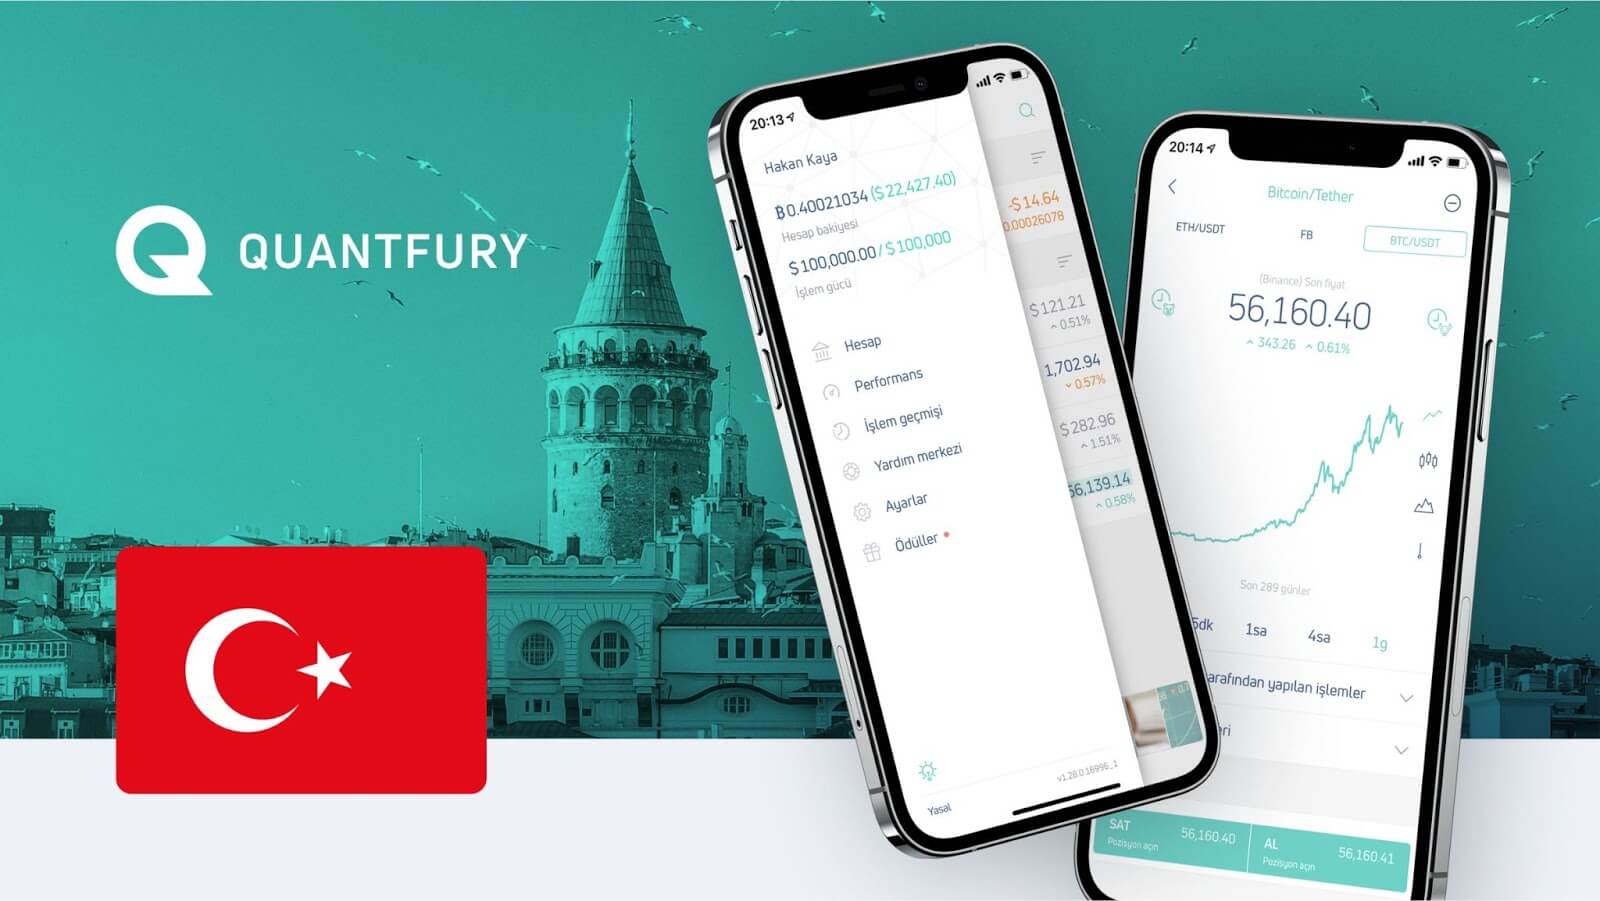 Quantfury Uygulaması Türk Kullanıcılara Kapılarını Açıyor